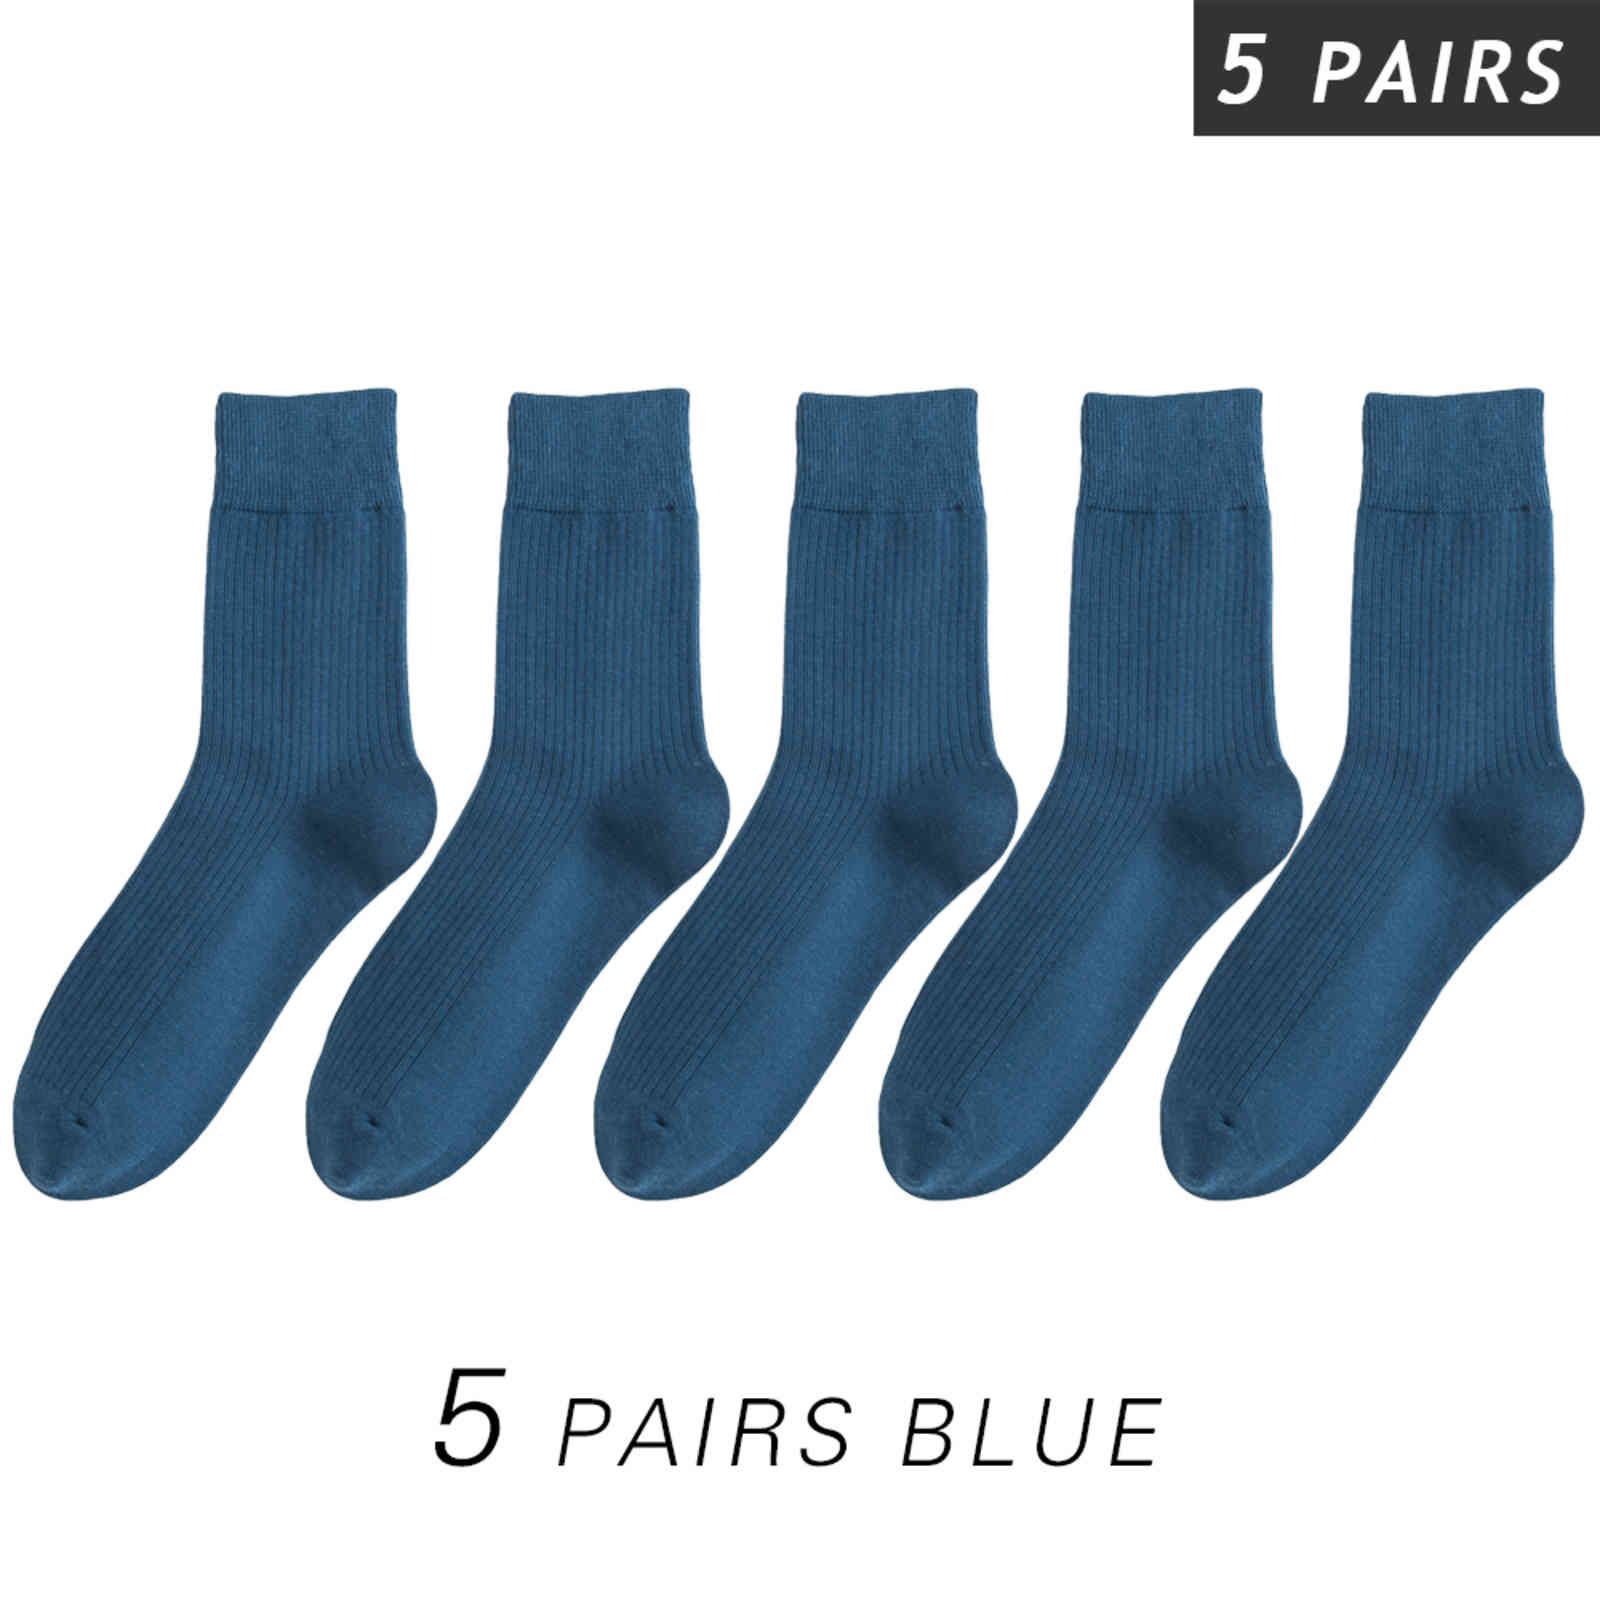 5 paires bleues